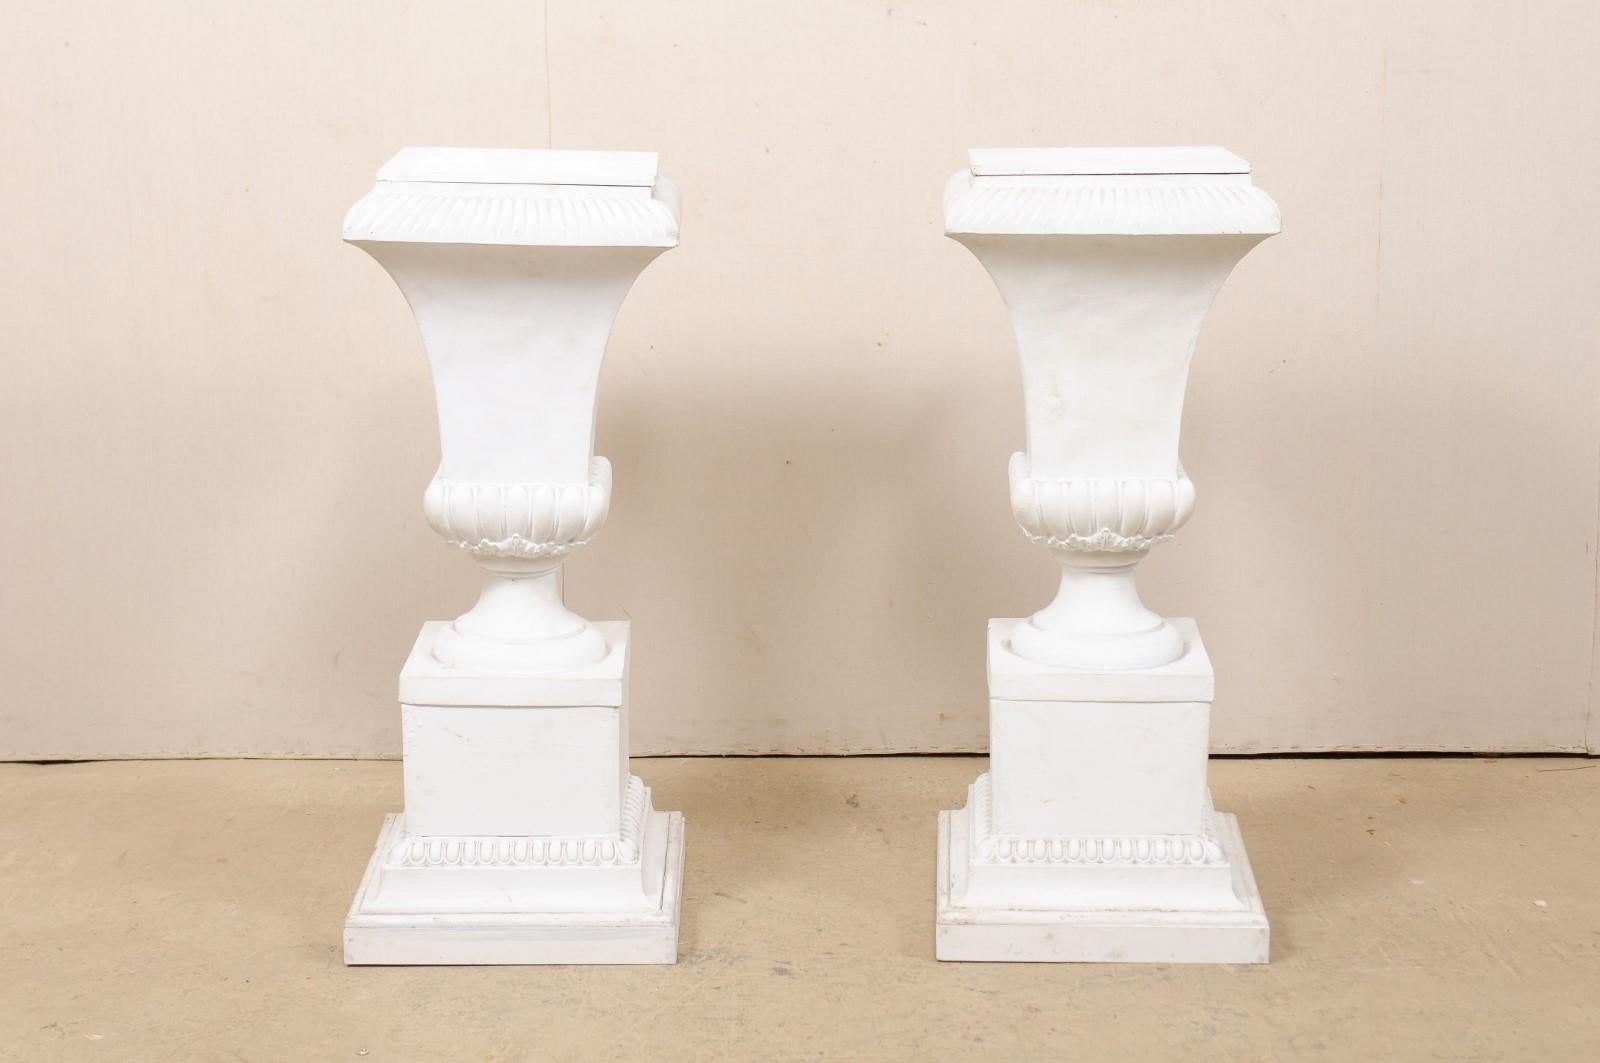 Pair of Fiberglass Urn-Shaped Pedestals, Standing 2